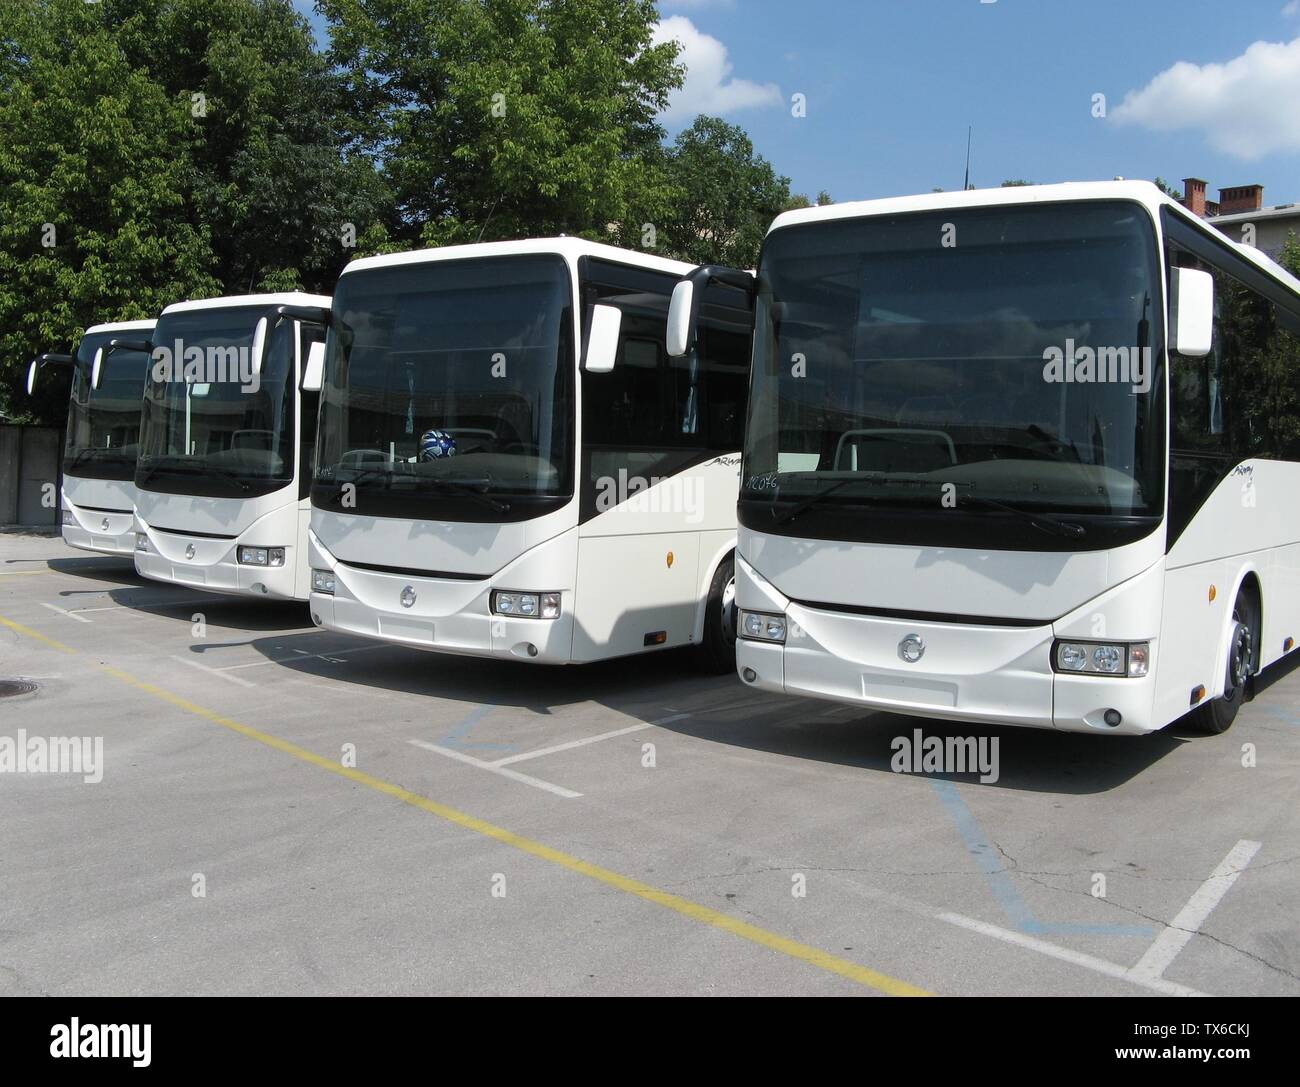 SlovenÅ¡Äina: Irisbus arway v lasti podjetja LPP, sikan v remizi.; 9 luglio 2013 (data di caricamento originale); Lavori Propri; Mich973 su sloveno pedia; Foto Stock